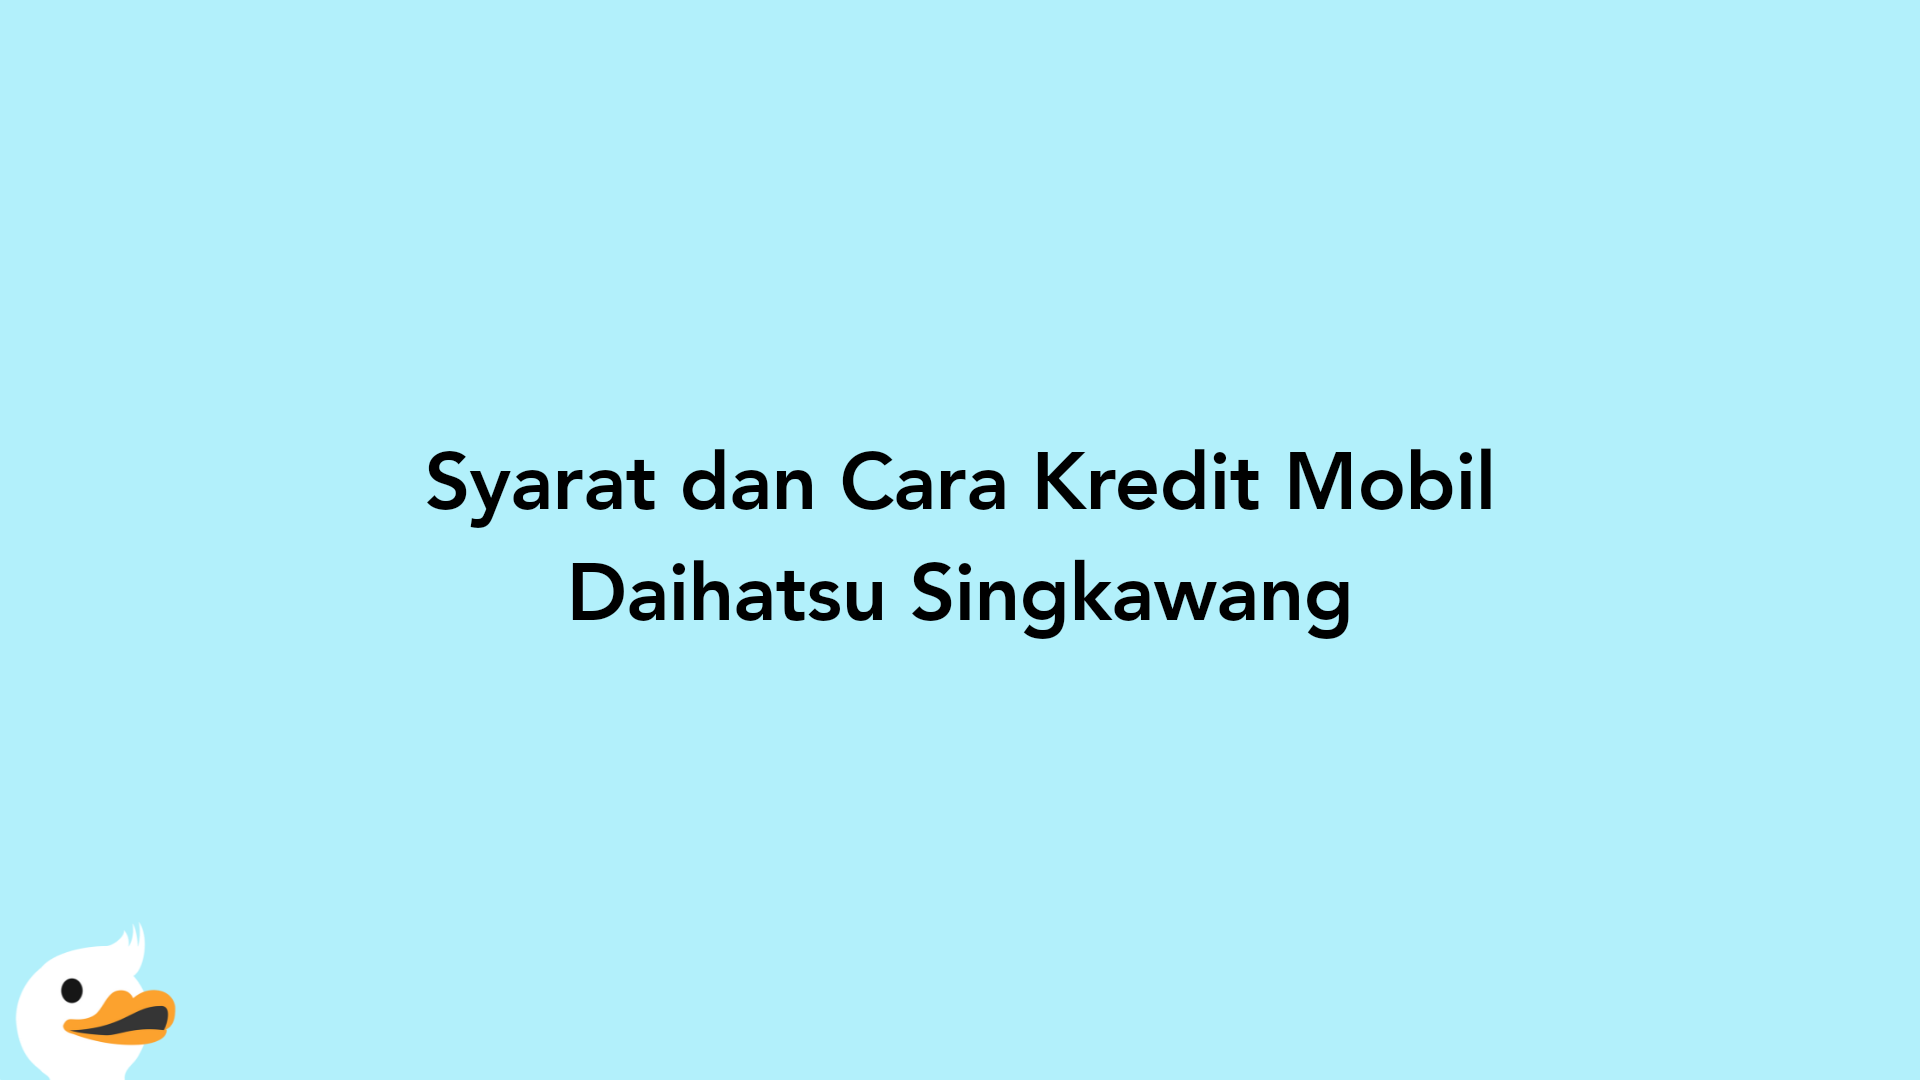 Syarat dan Cara Kredit Mobil Daihatsu Singkawang